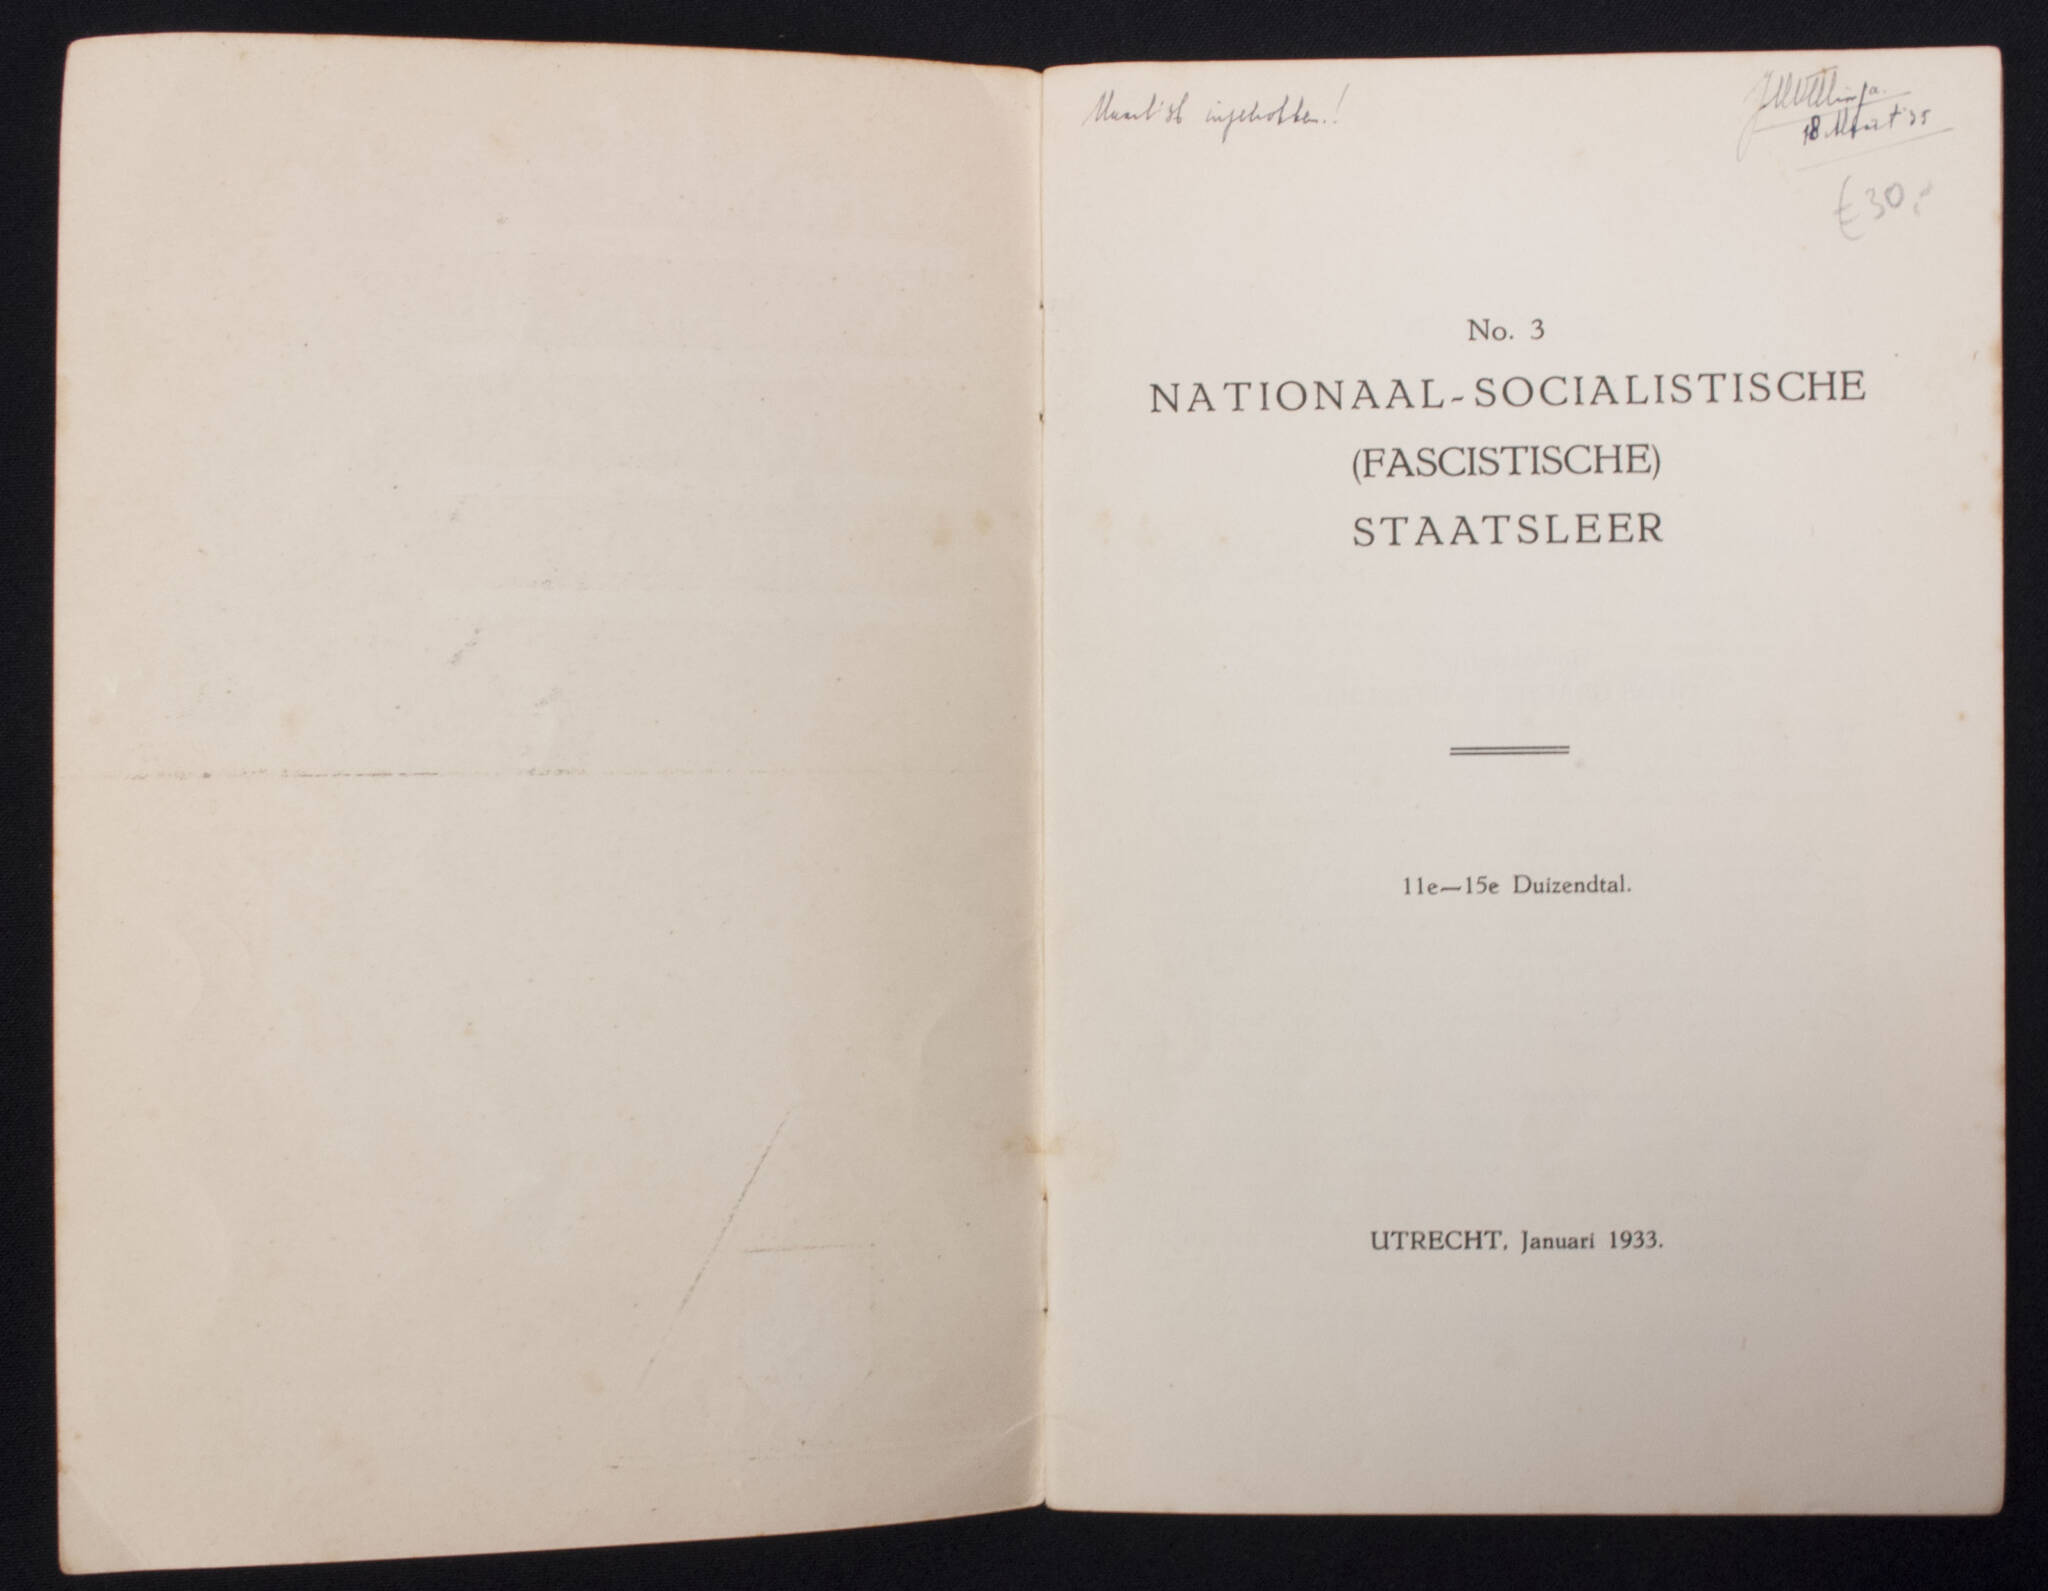 (Brochure) NSB Nationaal-Socialistische (Fascistische) Staatsleer No.3 - 11e - 15e Duizendtal